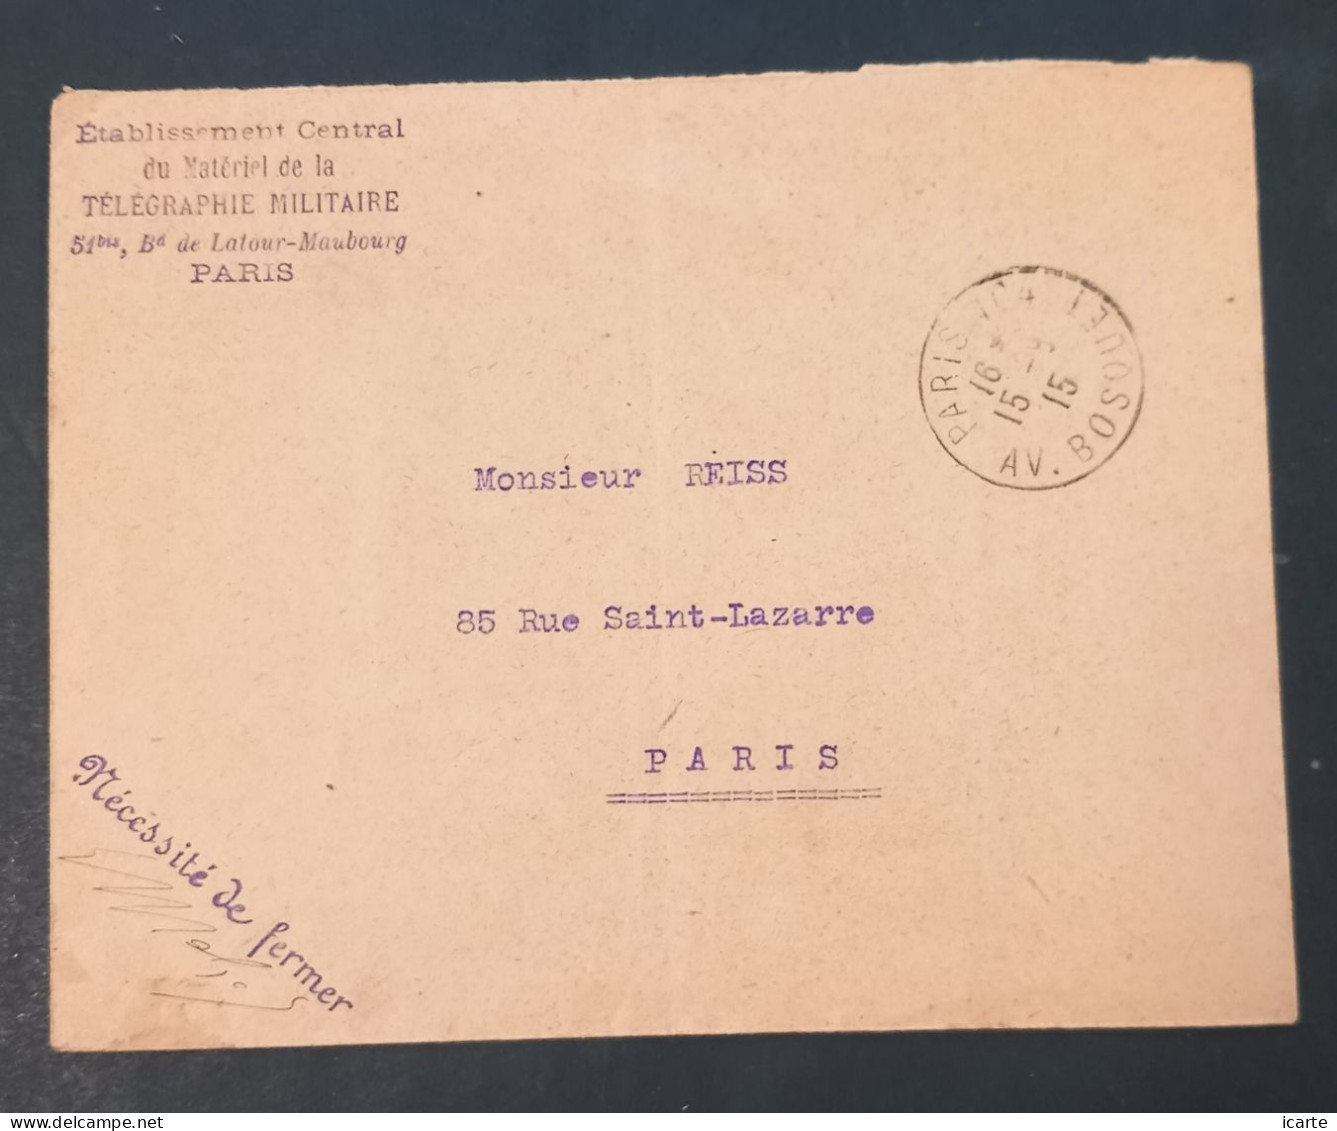 Cachet ETABLISSEMENT CENTRAL DU MATERIEL DE LA TELEGRAPHIE MILITAIRE Du 15 9 15 Sur Enveloppe En Franchise Militaire - WW I